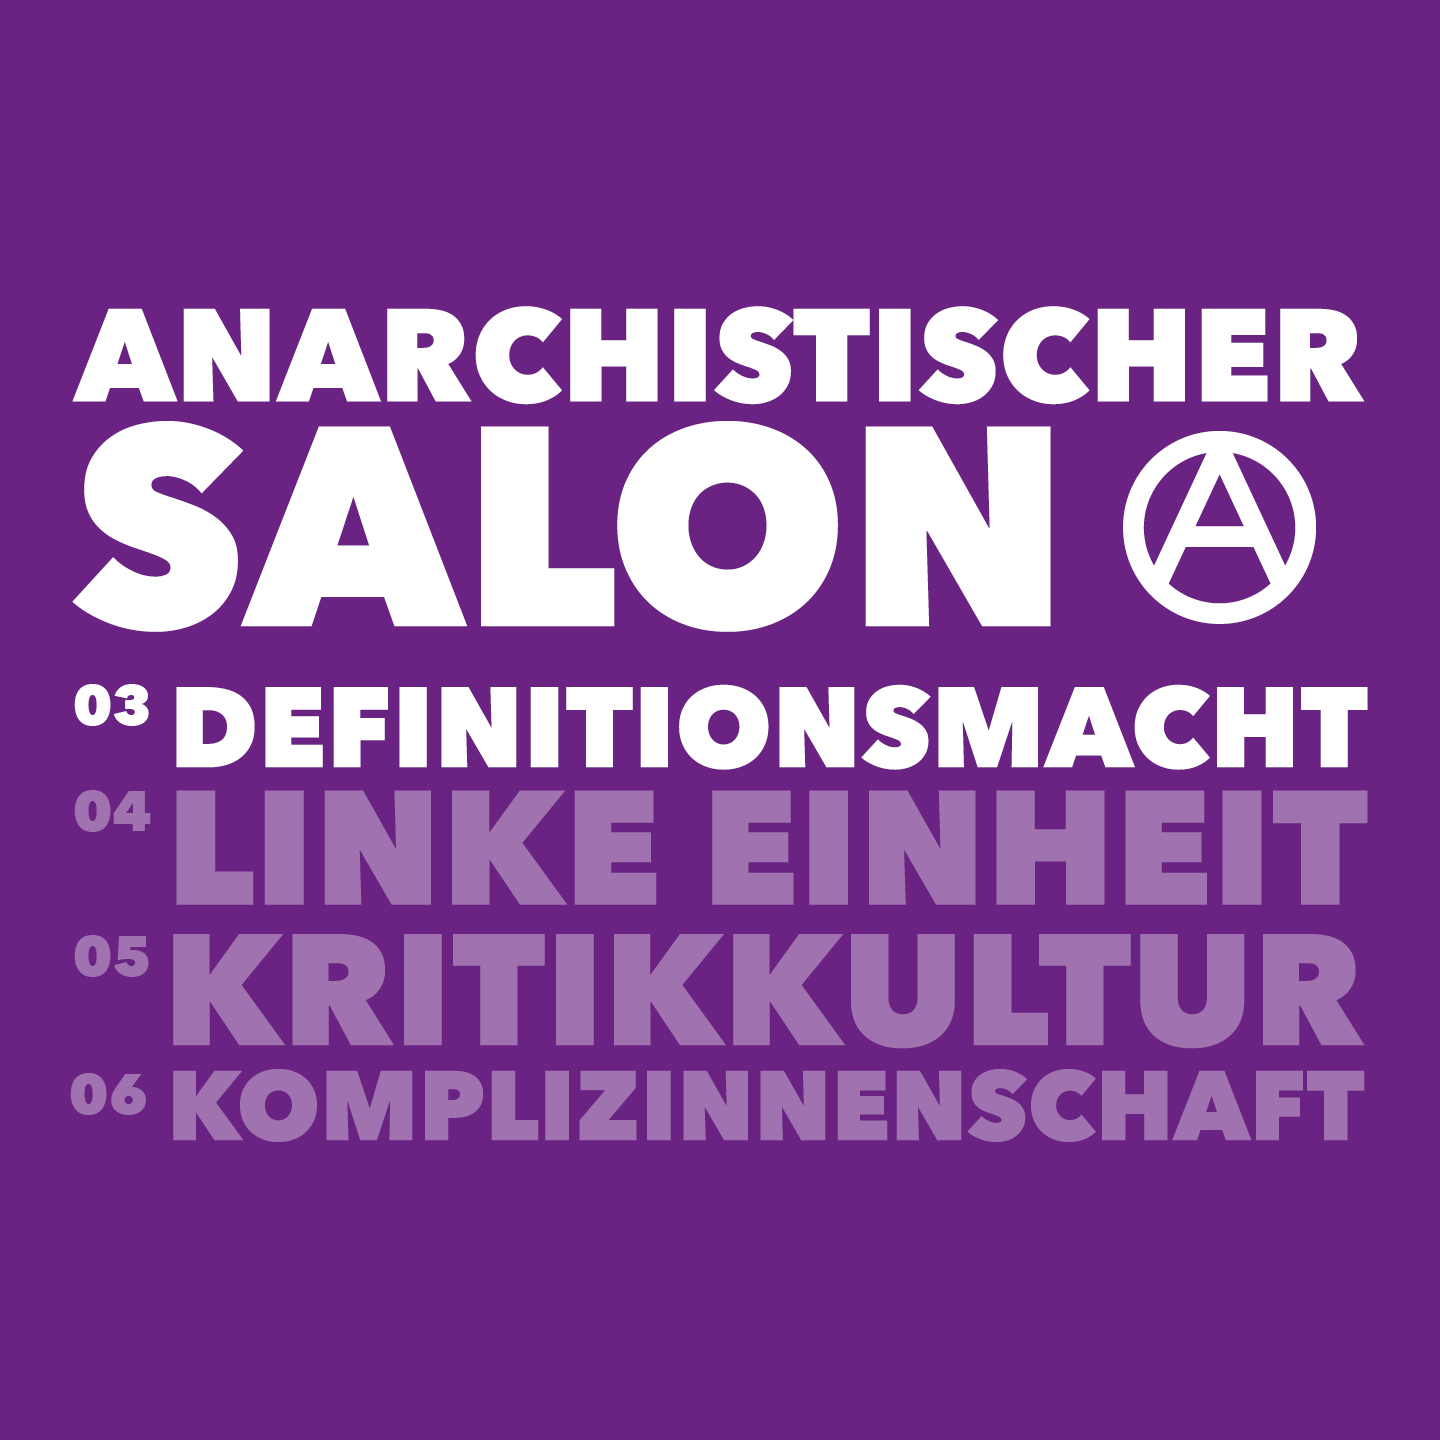 Anarchistischer Salon: Definitionsmacht